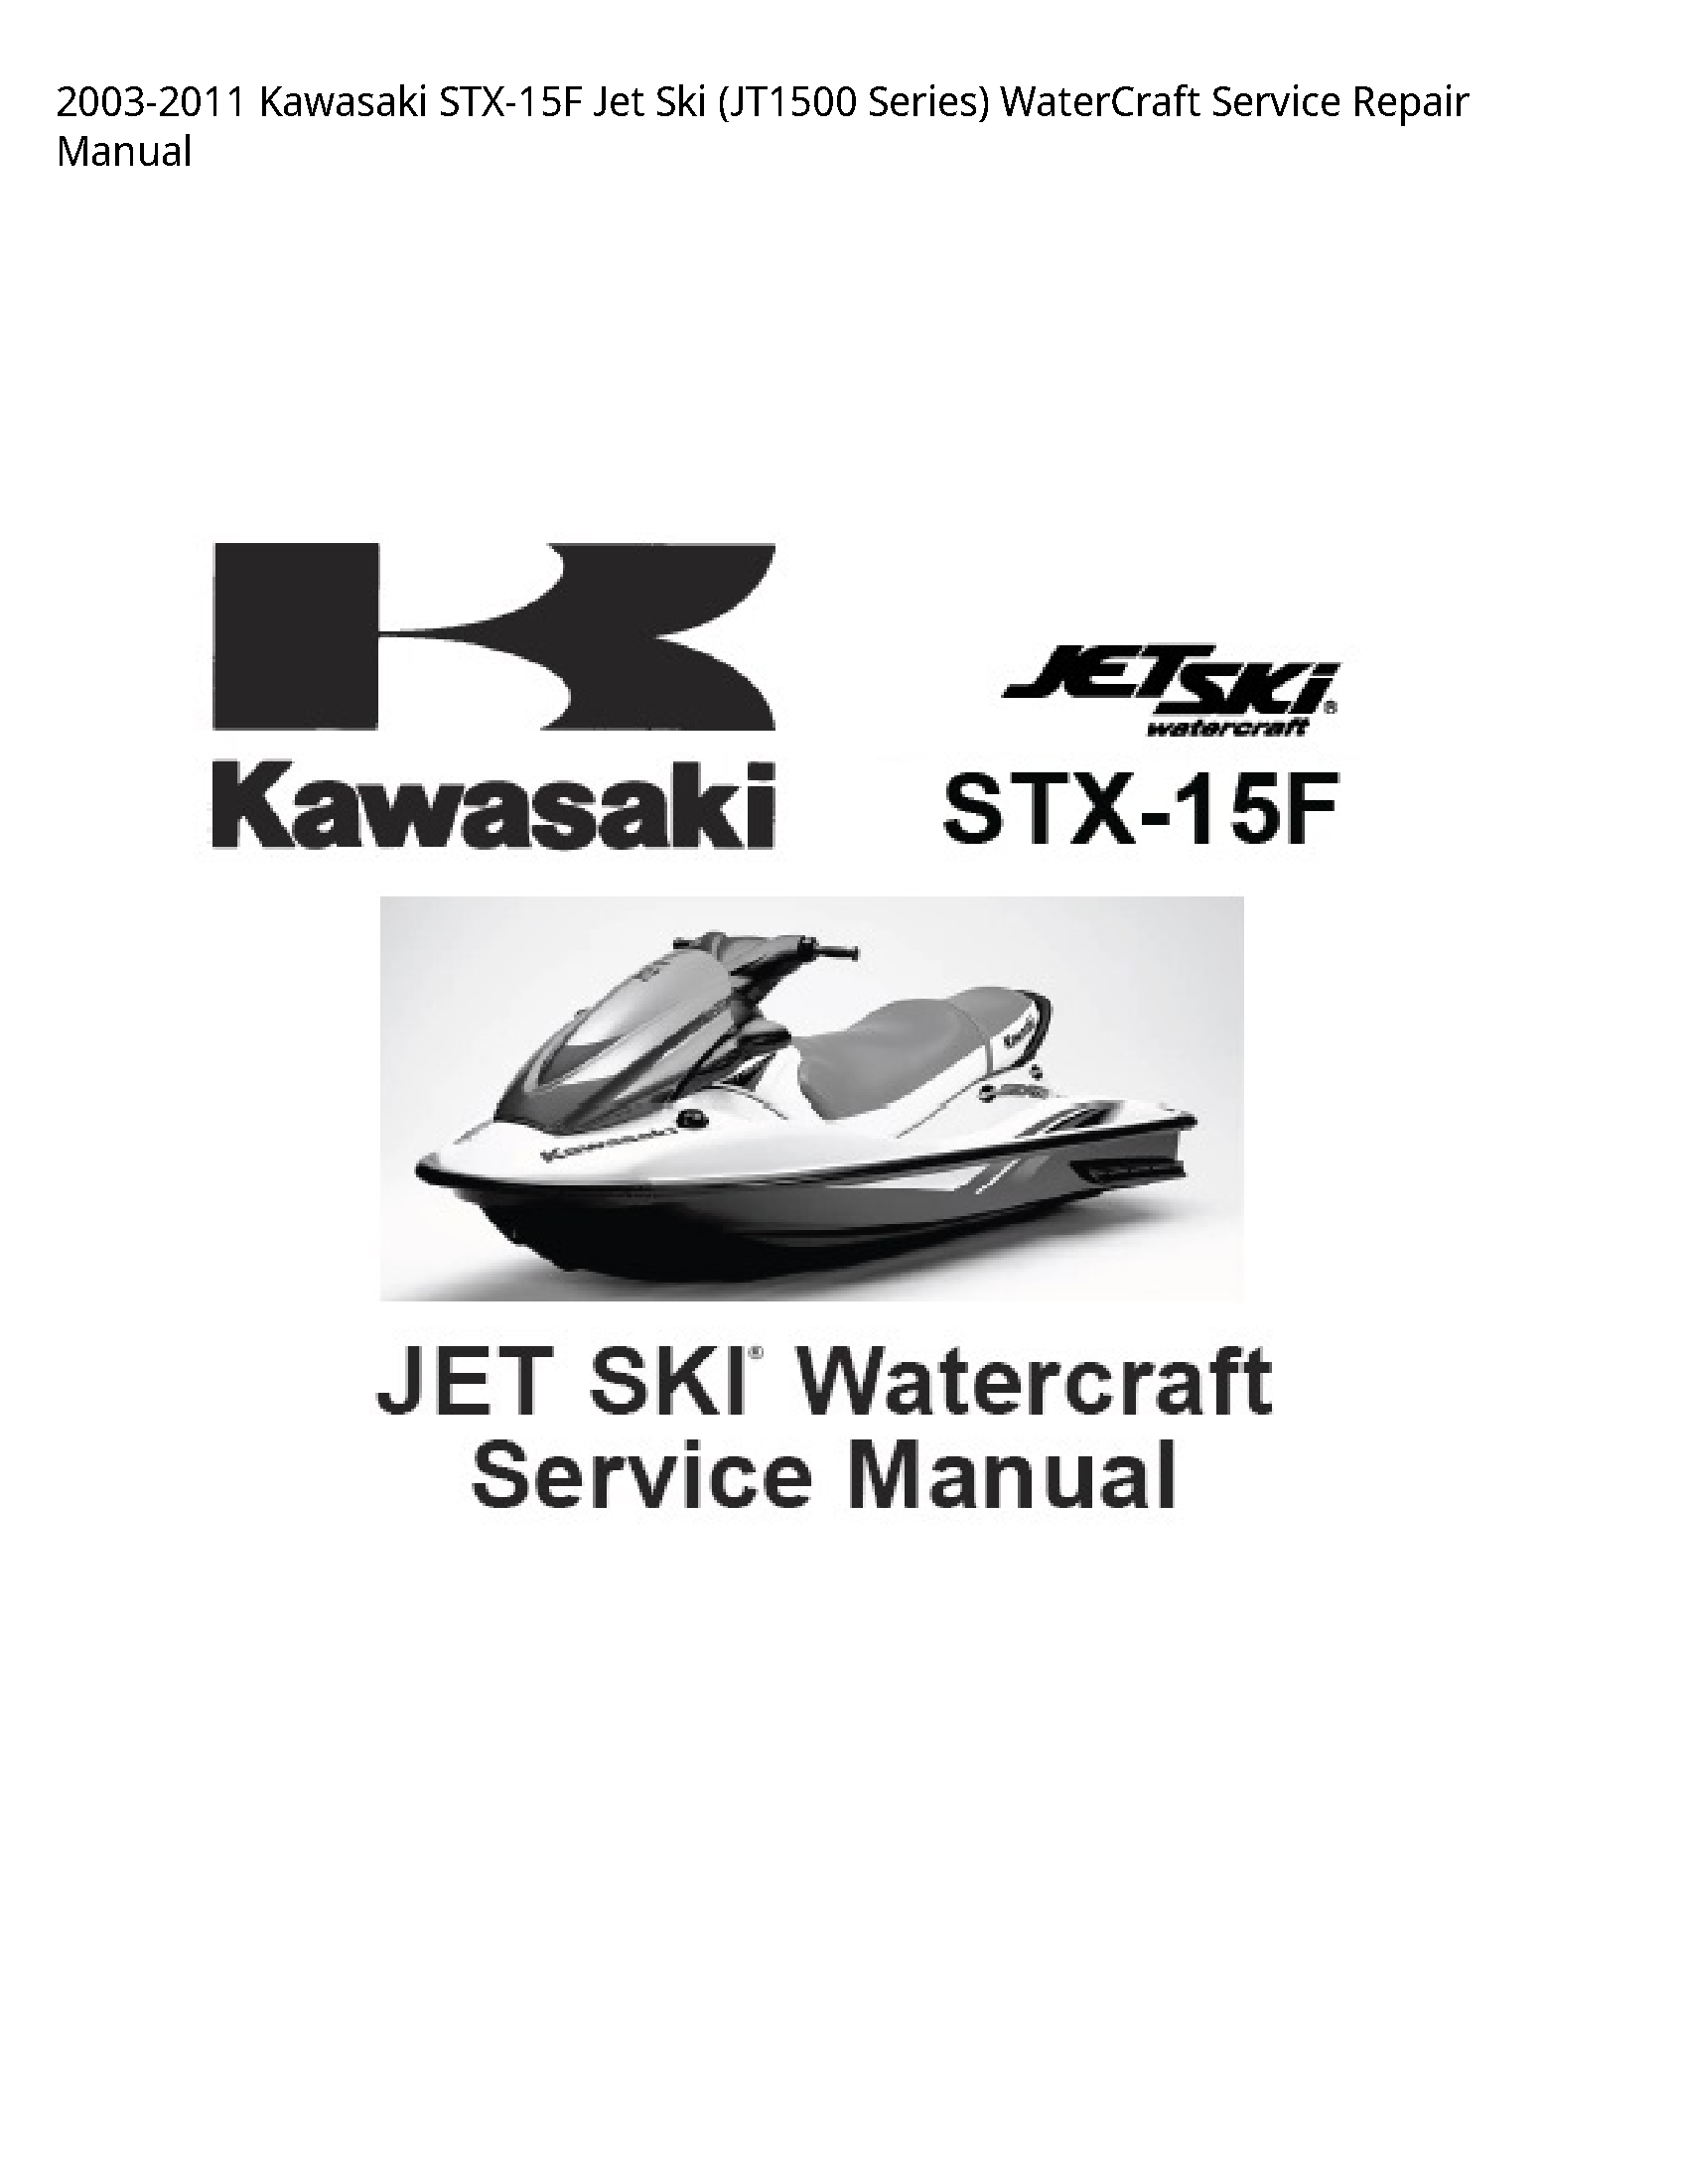 Kawasaki STX-15F Jet Ski Series) WaterCraft manual